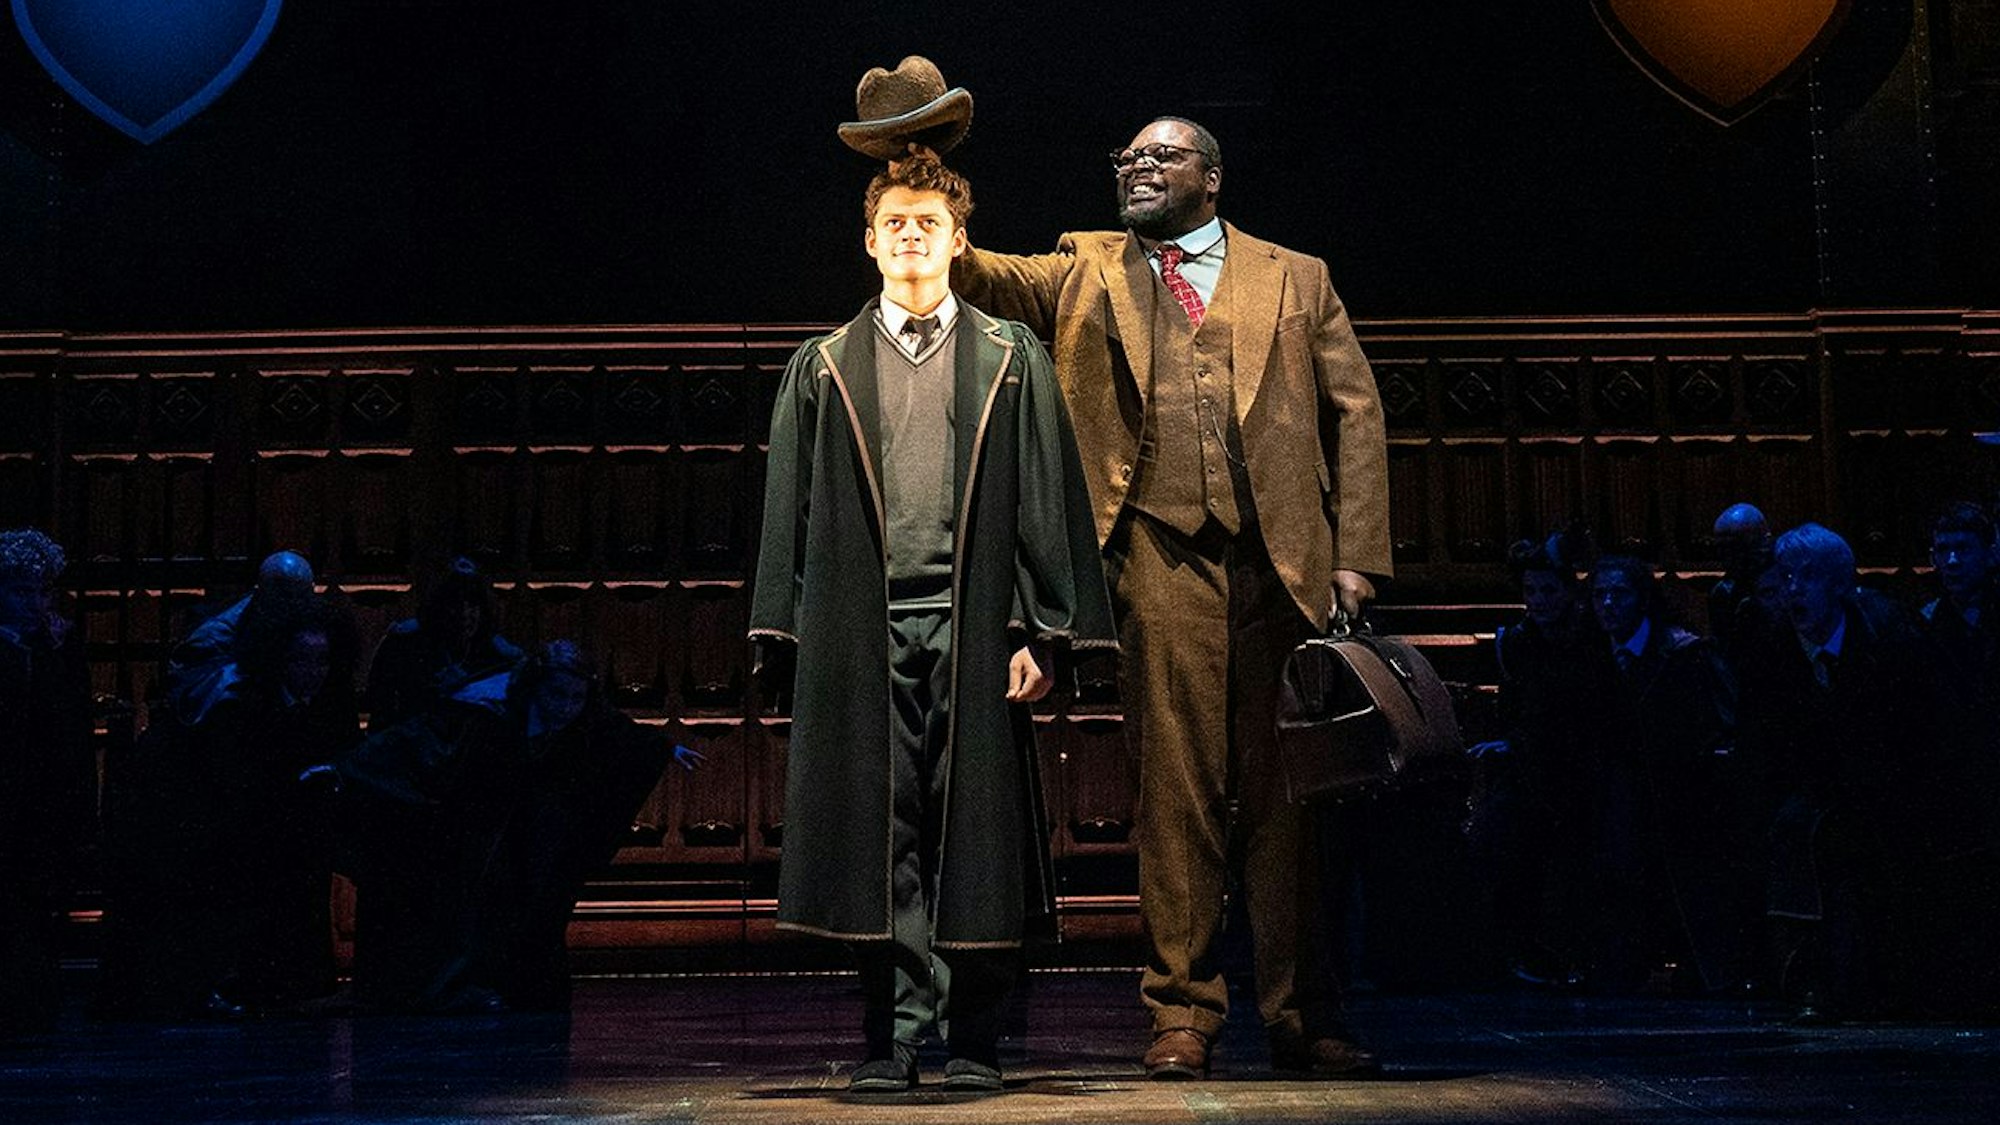 Albus Dumbledore Potter und ein Schauspieler, der den sprechenden Hut verkörpert, stehen nebeneinander auf der Bühne. Der Mann hält seinen Hut über den Kopf von Albus. Um sie herum sitzen im Dunklen weitere Hogwarts-Schülerinnen und Schüler.